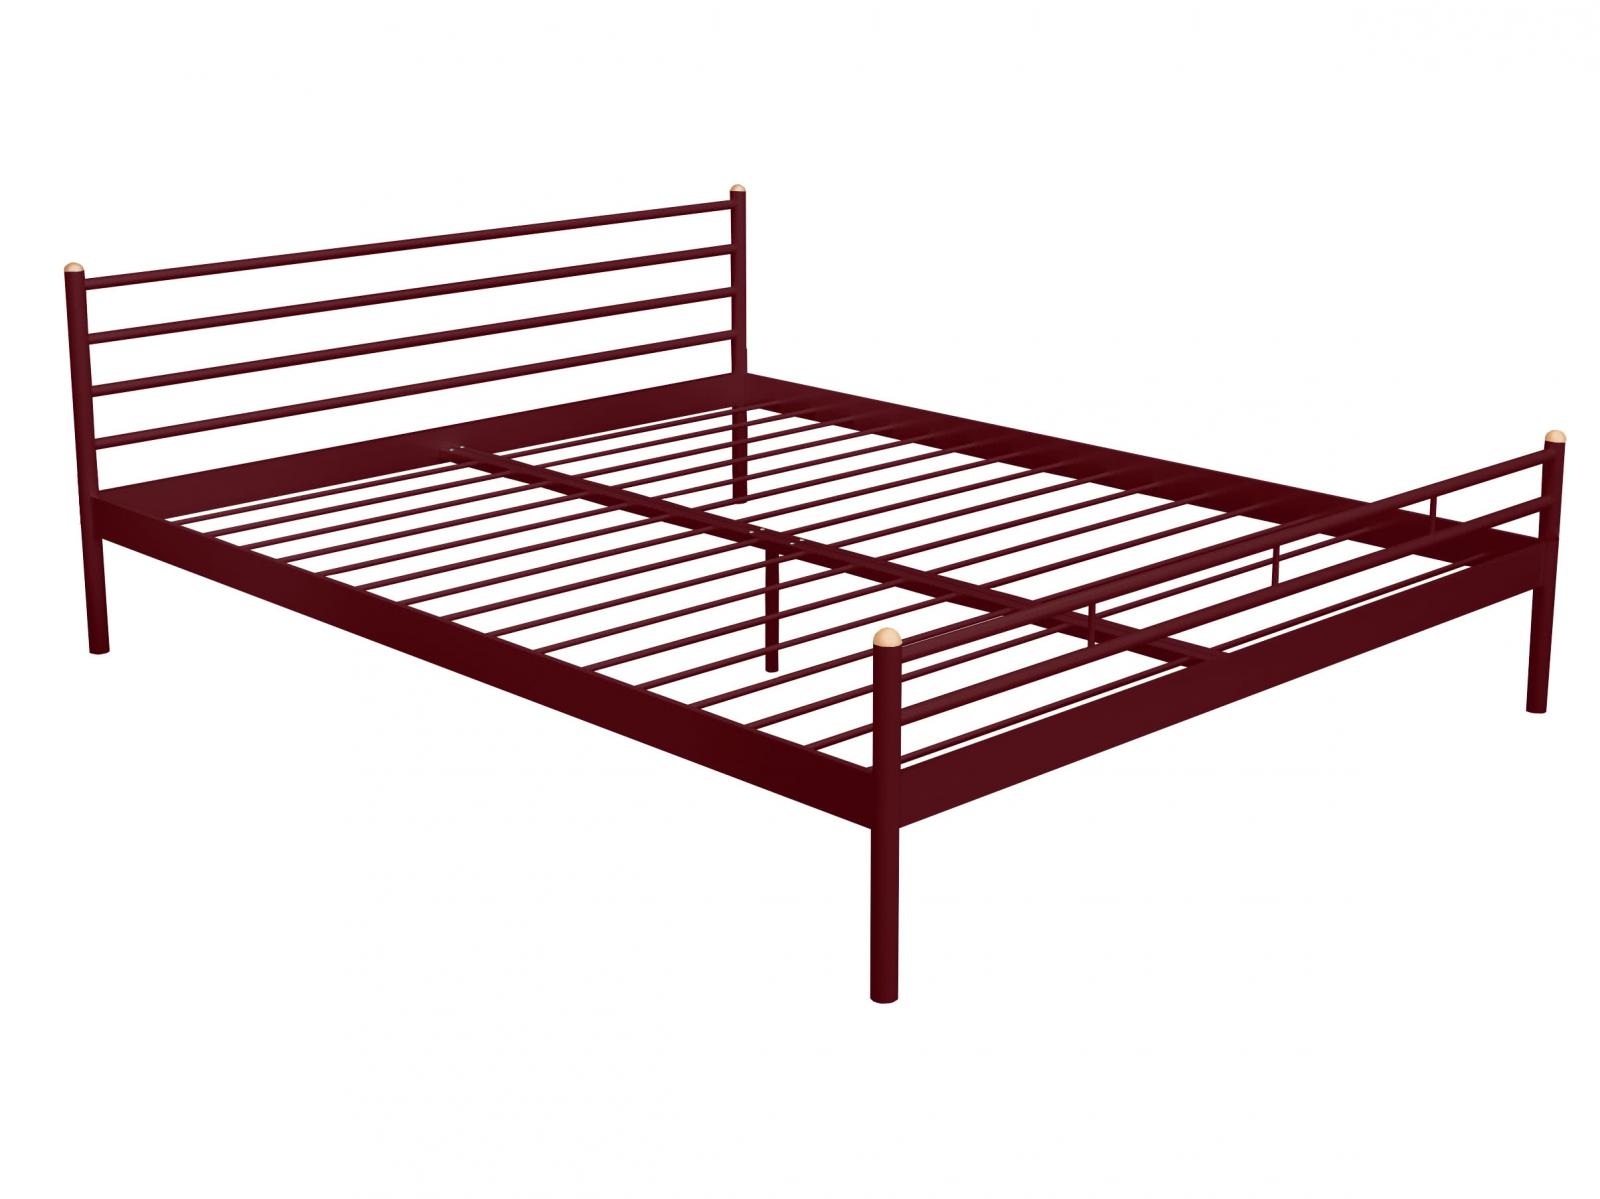 Купить кровать Alitte Кровать Alitte Charlotte, бордо 180 х 200 см бордо дешево на официальном сайте